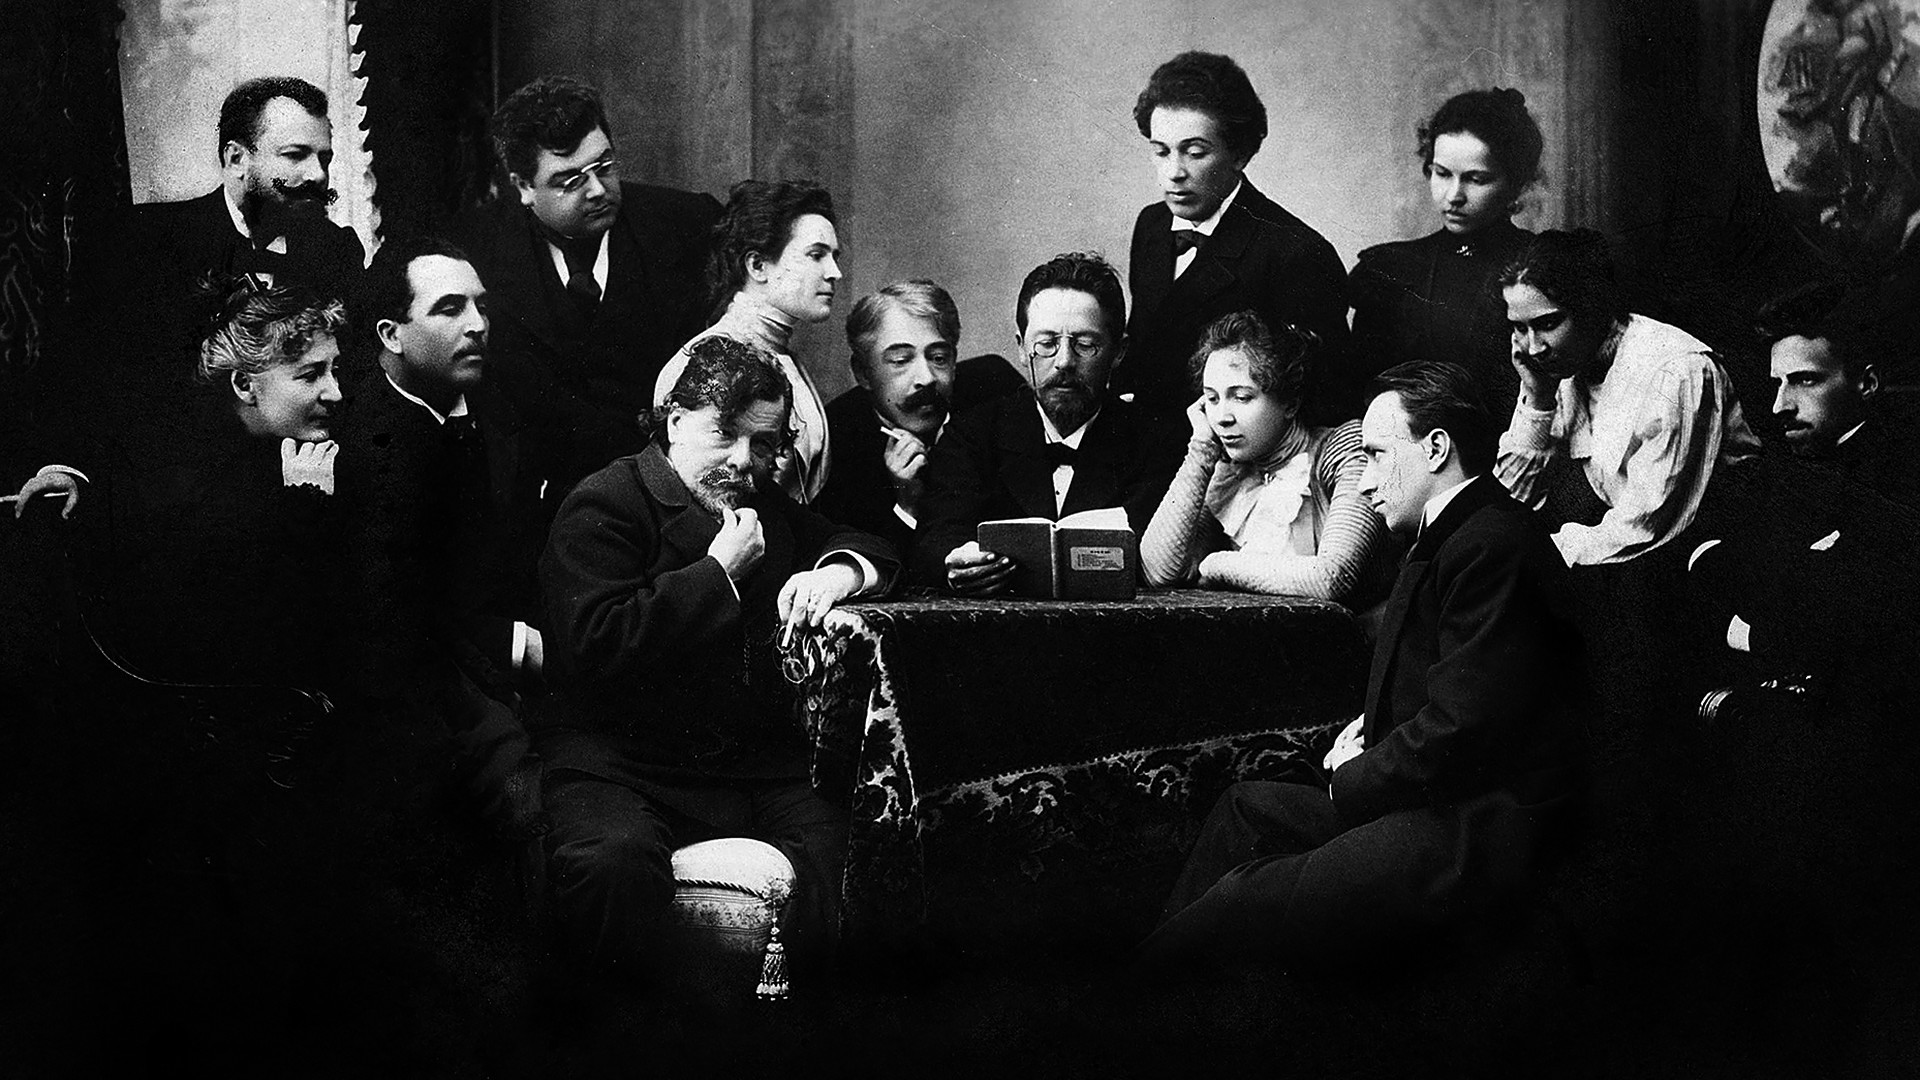   Tchékhov lê “A gaivota” a um grupo de atores do Teatro de Arte de Moscou. Entre eles estão Konstantín Stanislávski (à esq. de Tchékhov), Olga Knipper (segunda à direita de Tchékhov), Vsevolód Meyerhold (dir.), e Vladímir Nemirovitch Dantchenko (em pé à esq.). 